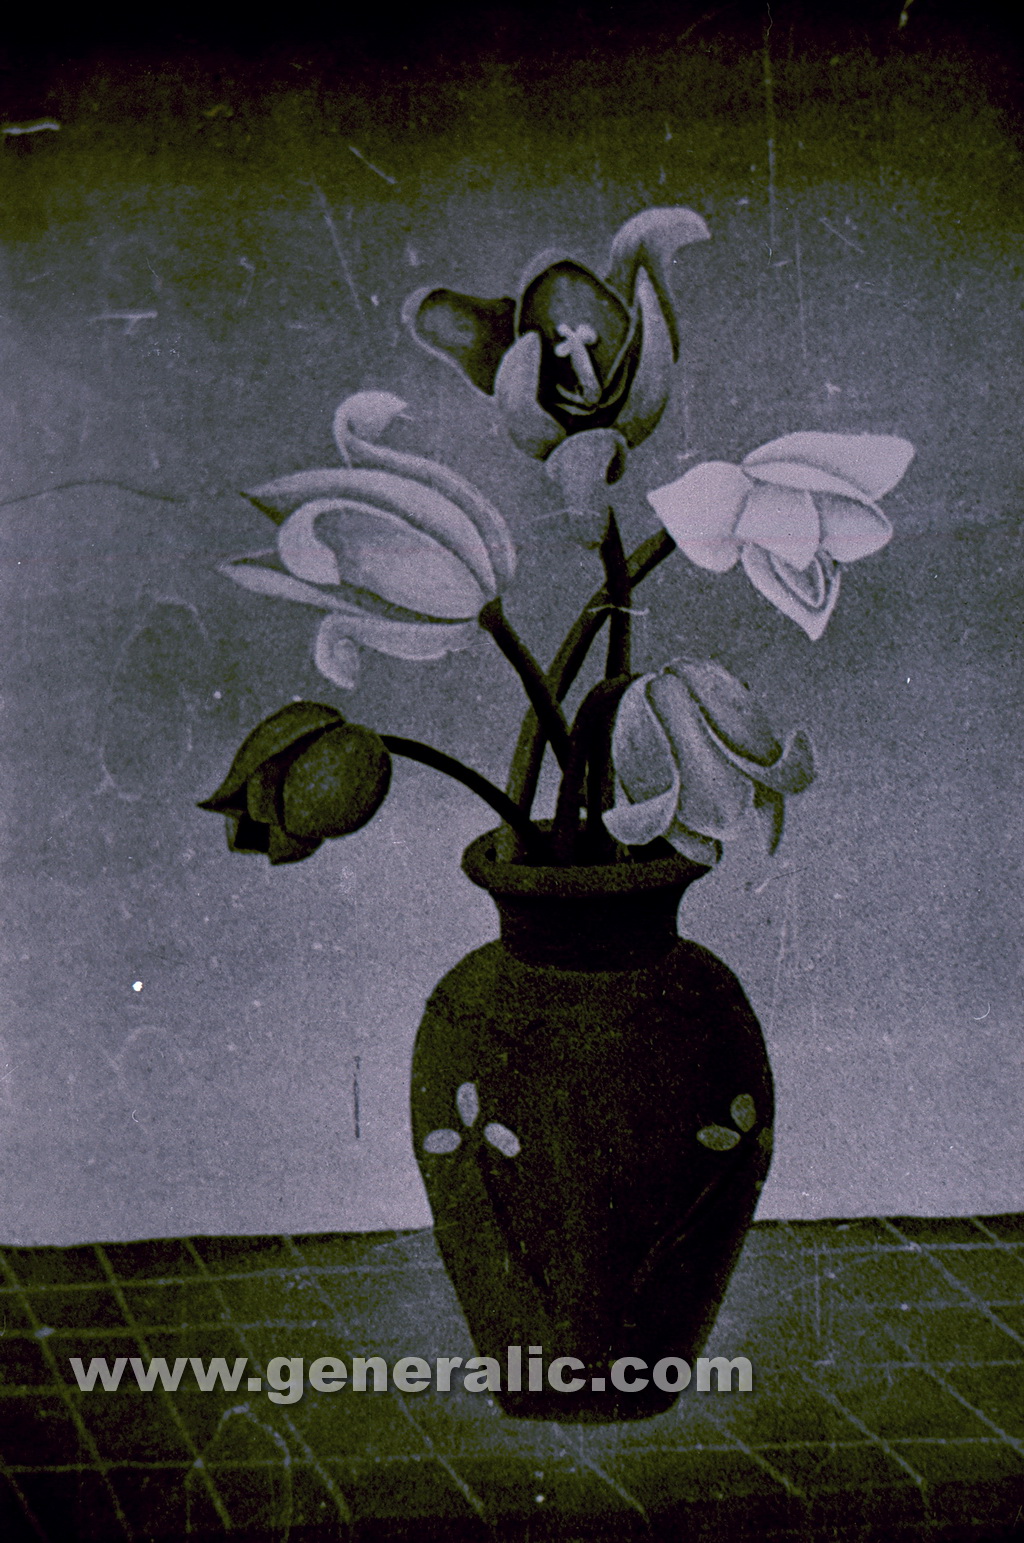 Josip Generalic, 1960, Flowers in a vase, oil on glass